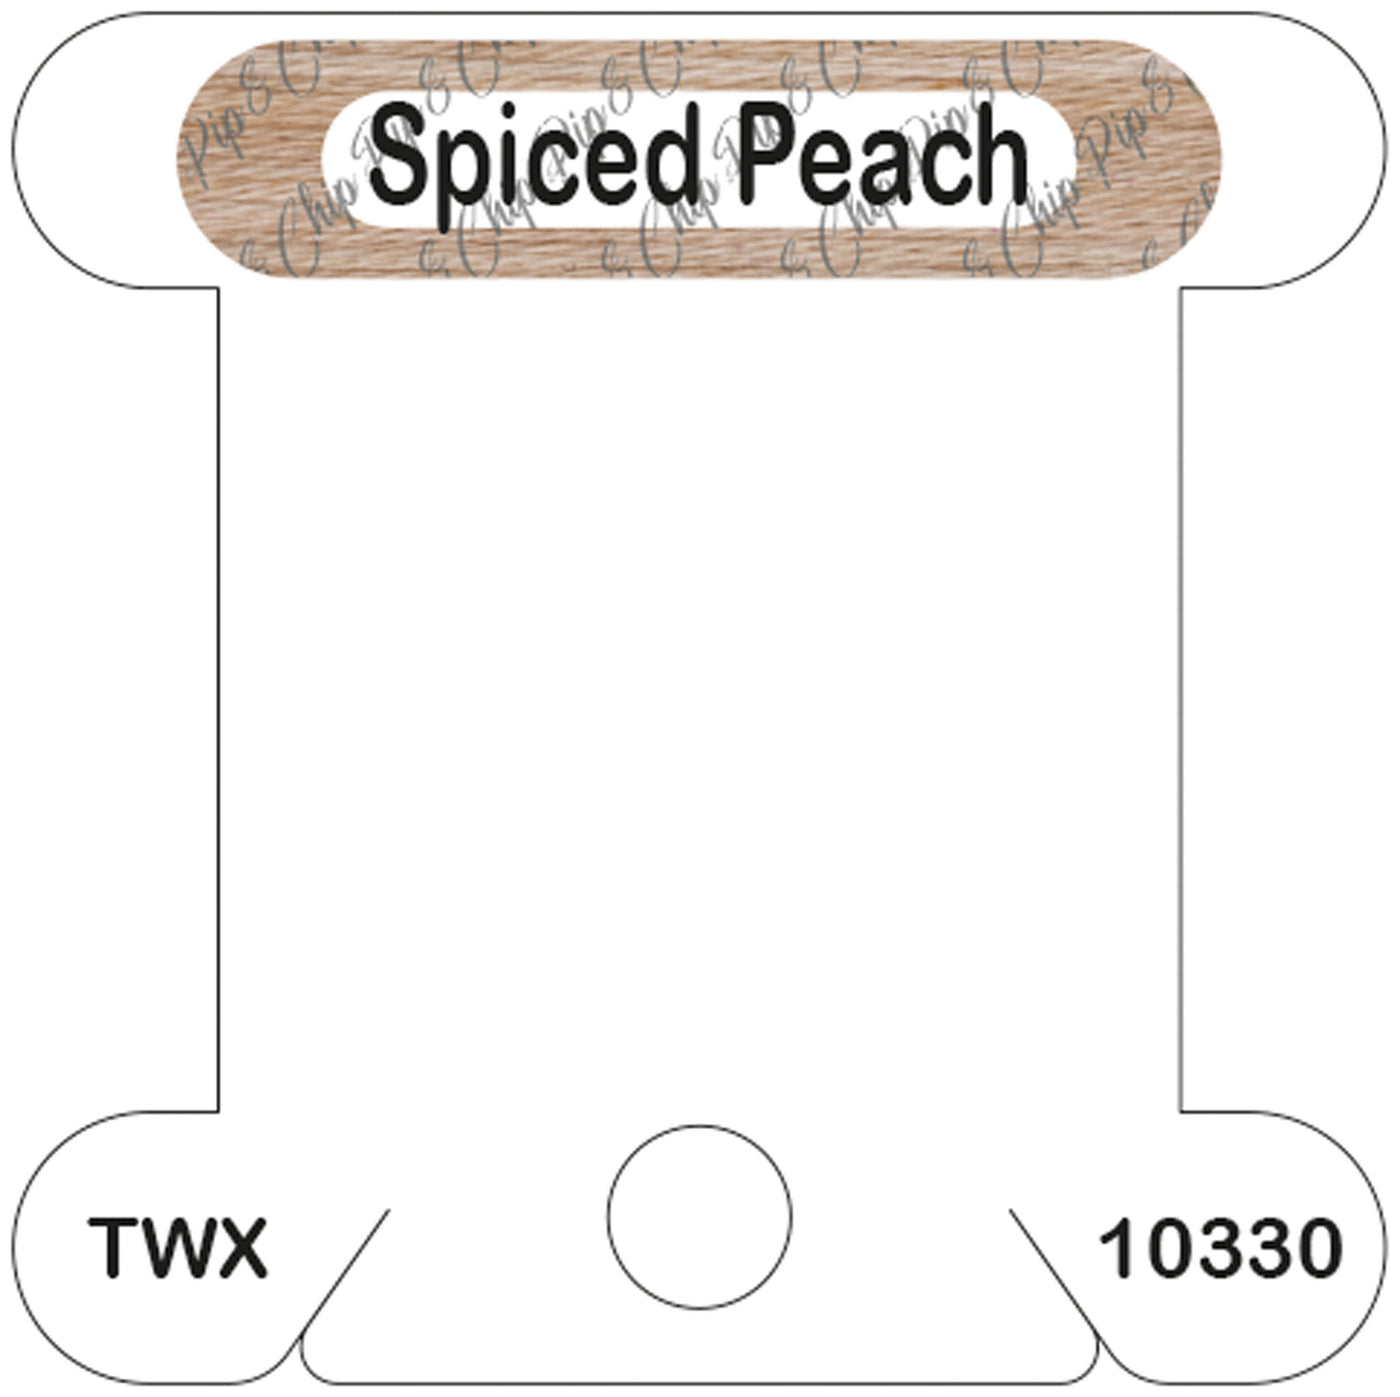 ThreadworX Spiced Peach acrylic bobbin